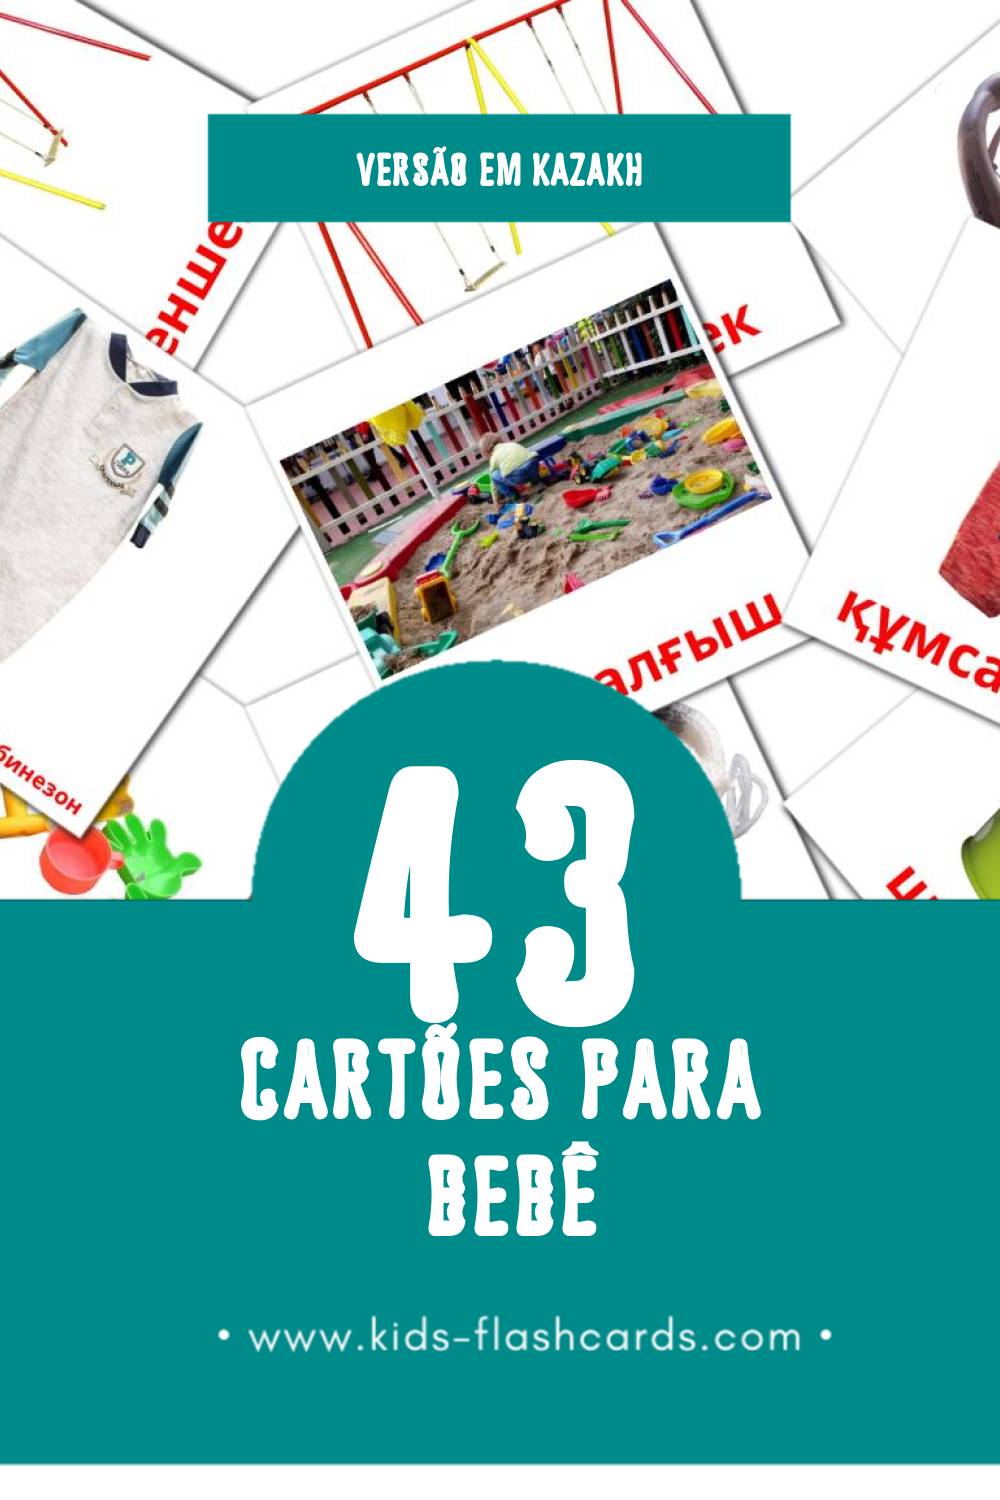 Flashcards de Бала Visuais para Toddlers (43 cartões em Kazakh)